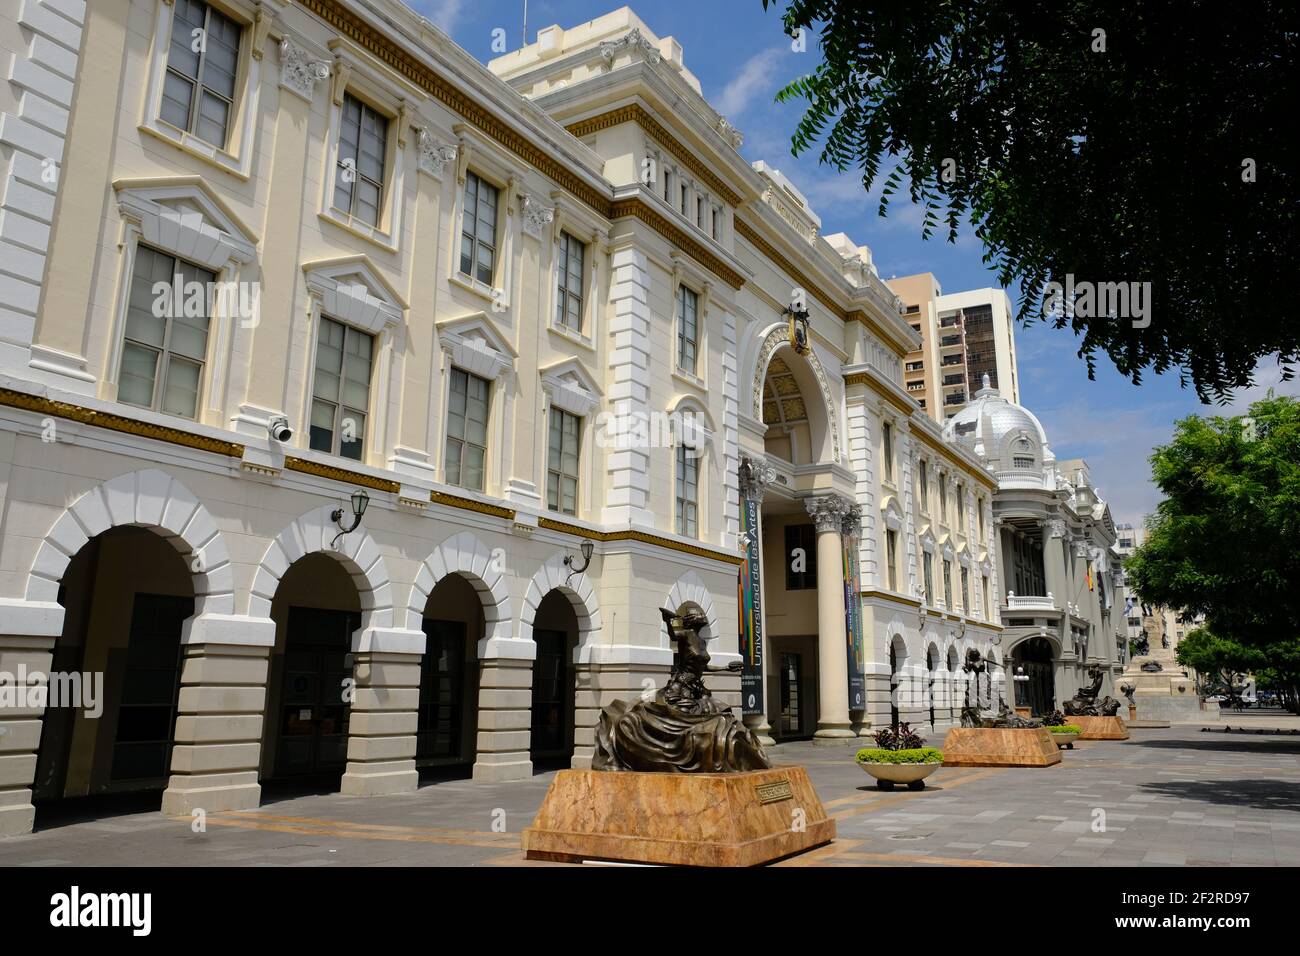 Ecuador Guayaquil - Facade of the University of the Arts - Universidad de las Artes Stock Photo